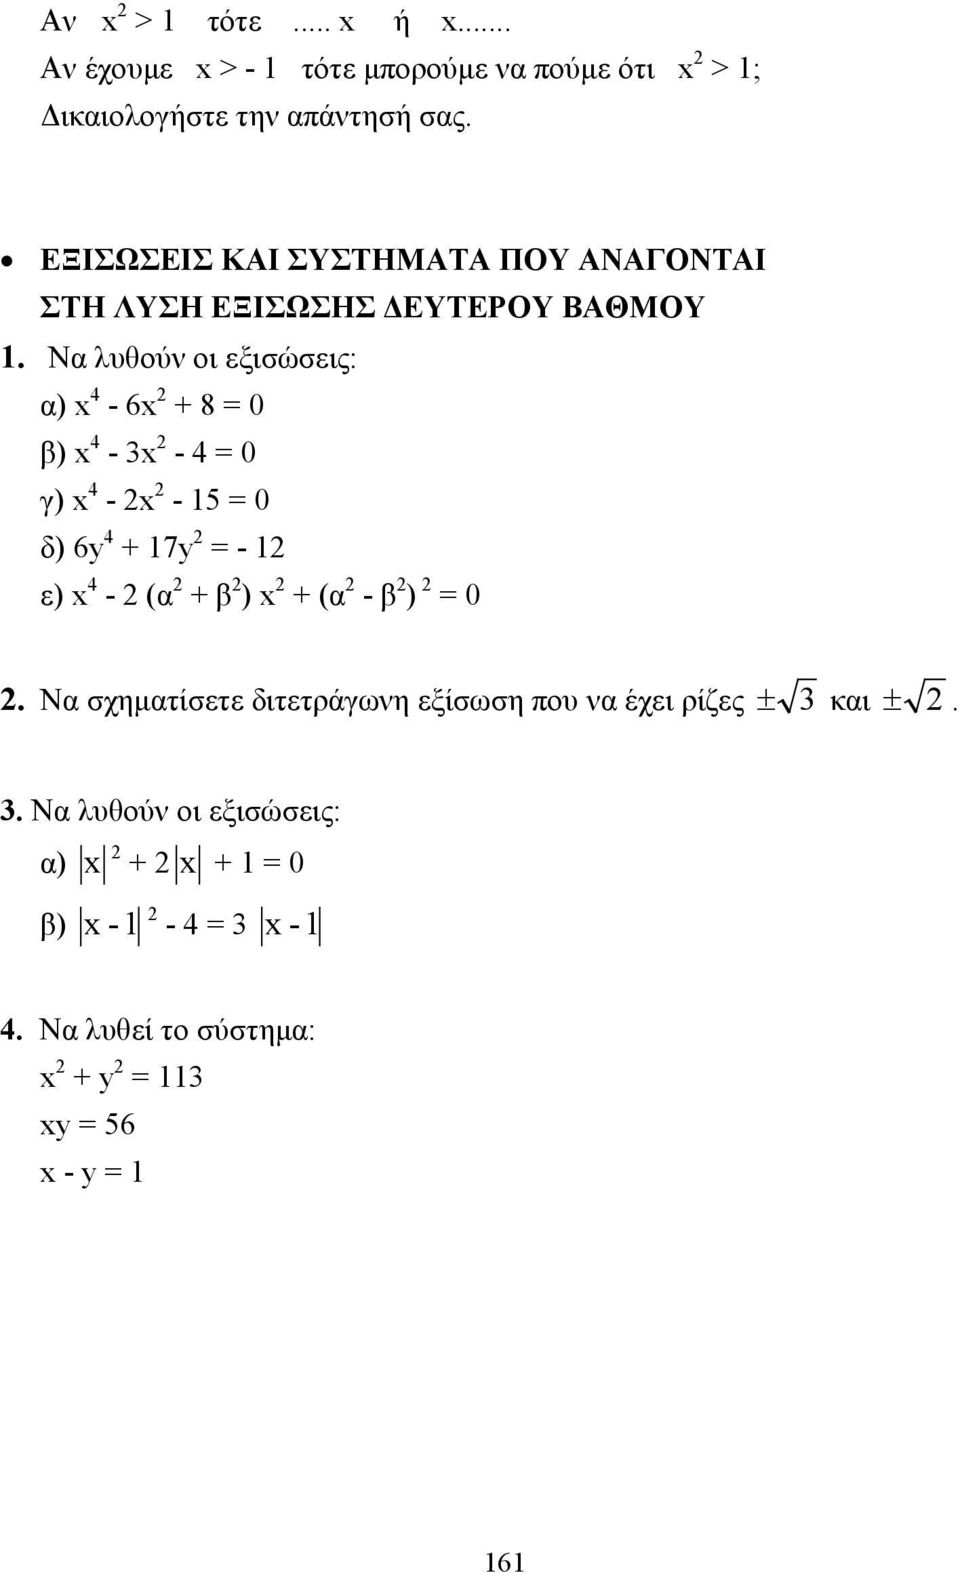 Να λυθούν οι εξισώσεις: α) 4-6 + 8 = 0 β) 4-3 - 4 = 0 γ) 4 - - 15 = 0 δ) 6y 4 + 17y = - 1 ε) 4 - (α + β ) + (α - β )